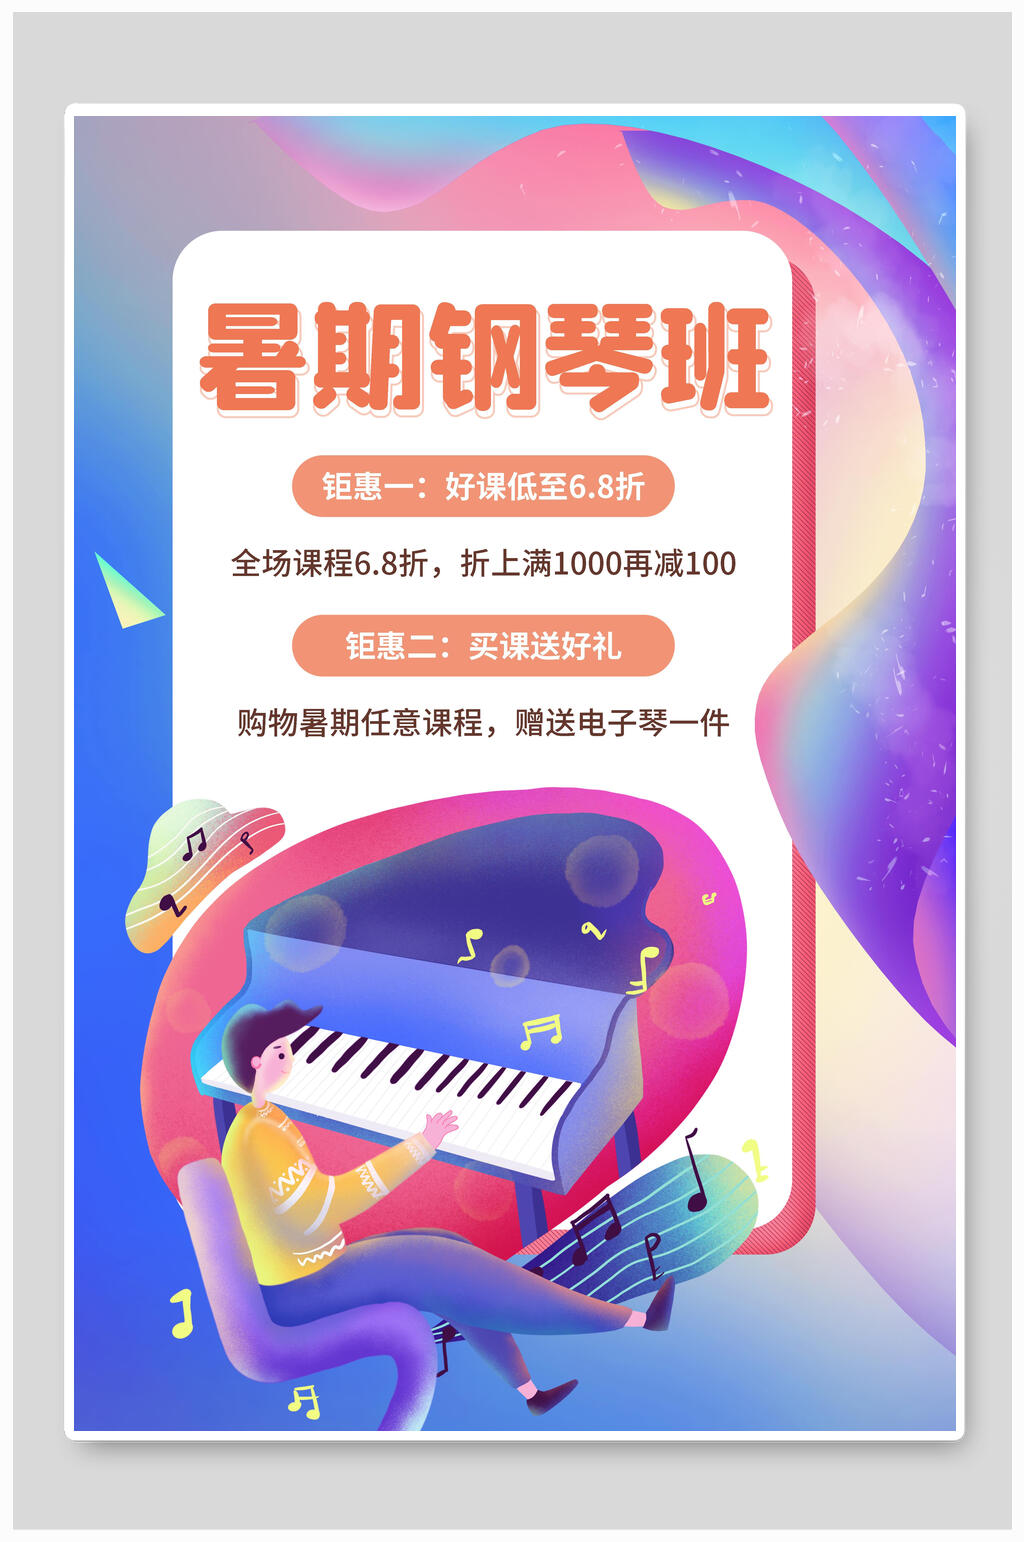 ppt模板钢琴培训暑期招生宣传海报暑期钢琴班培训招生全场优惠宣传海